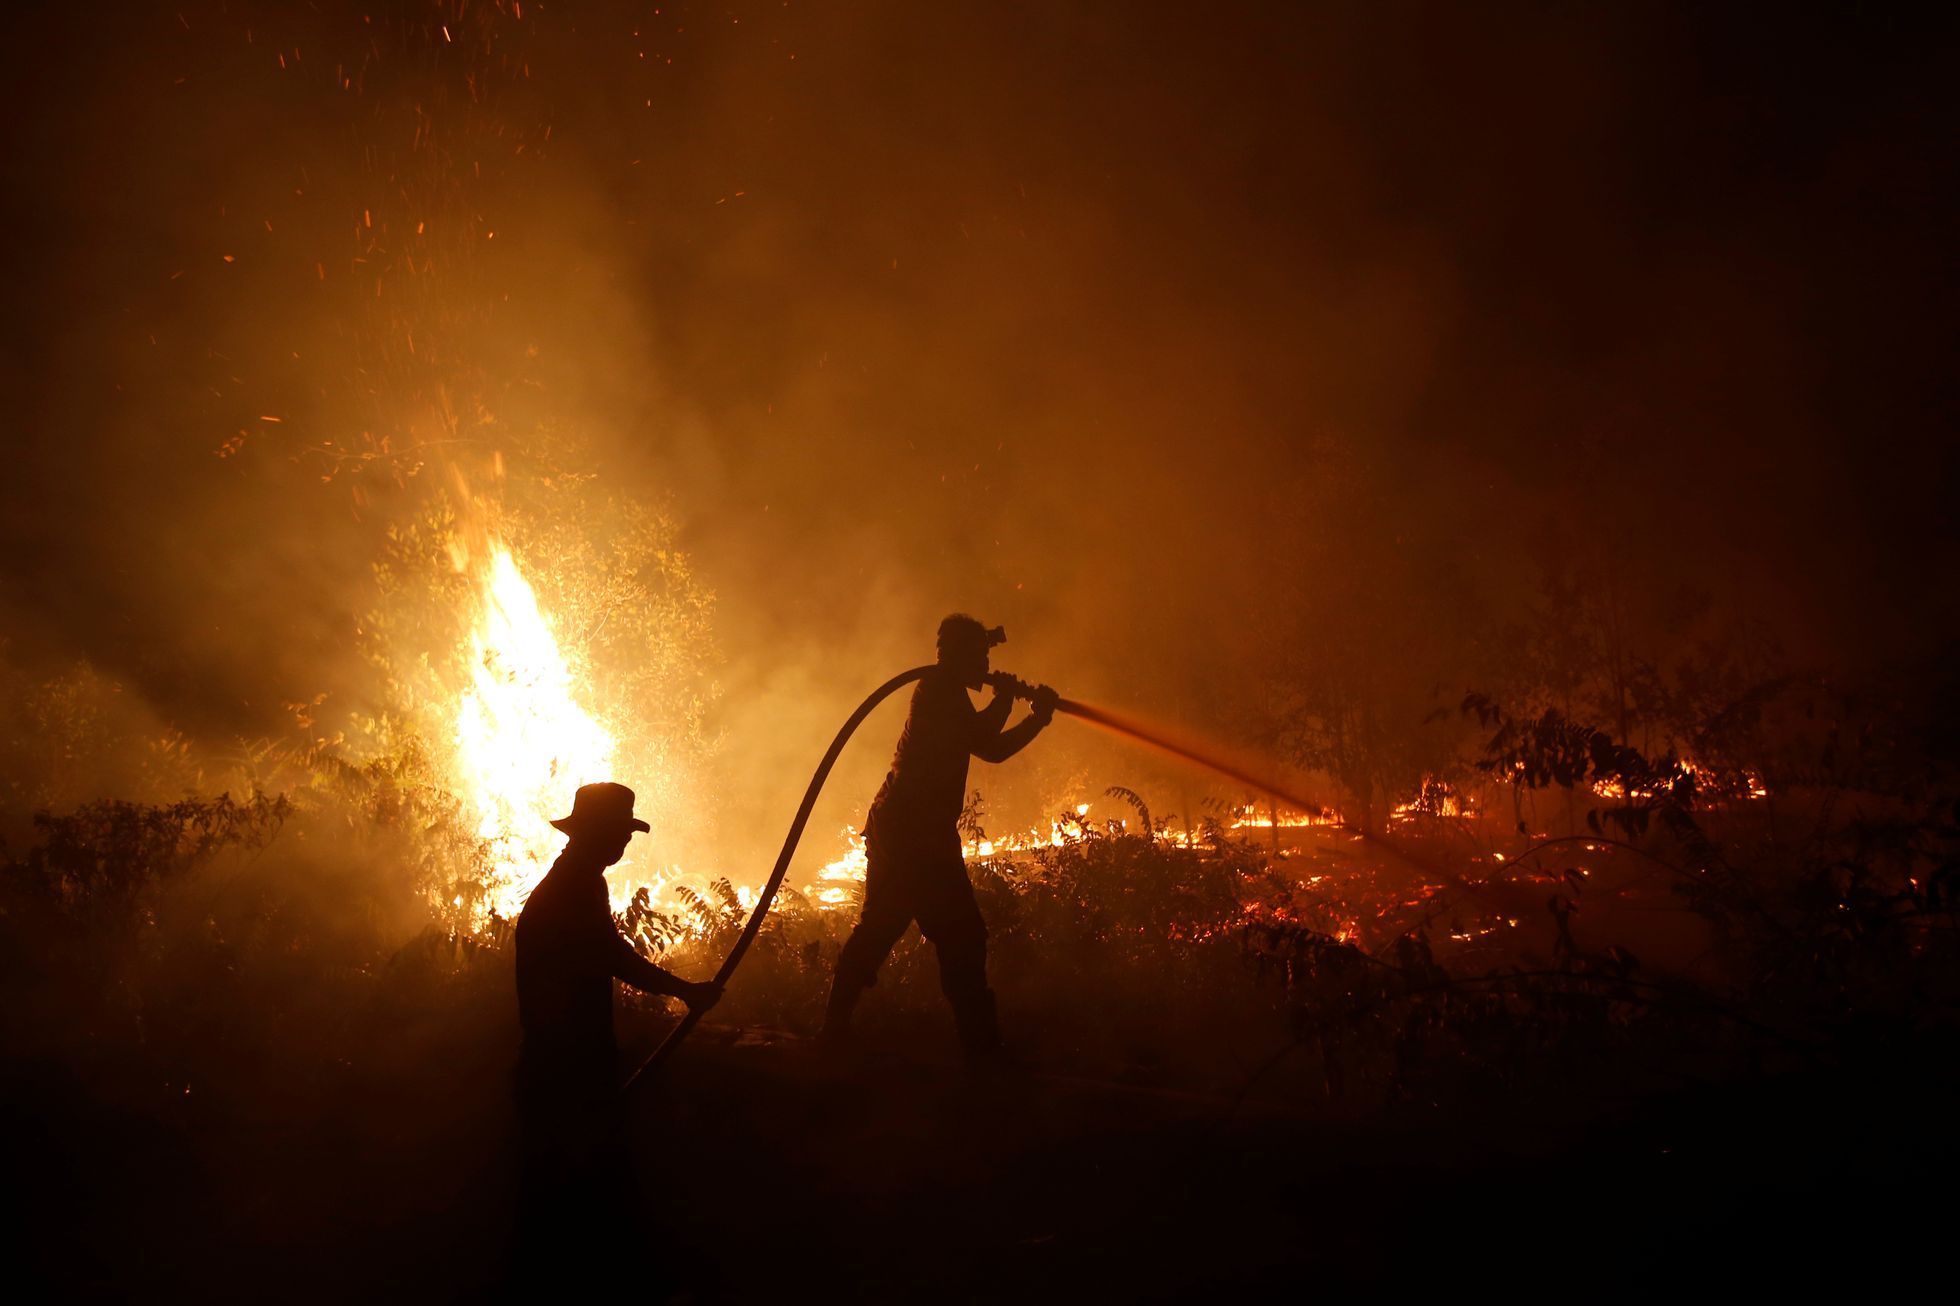 Požár v indonéském tropickém pralese / Září 2019